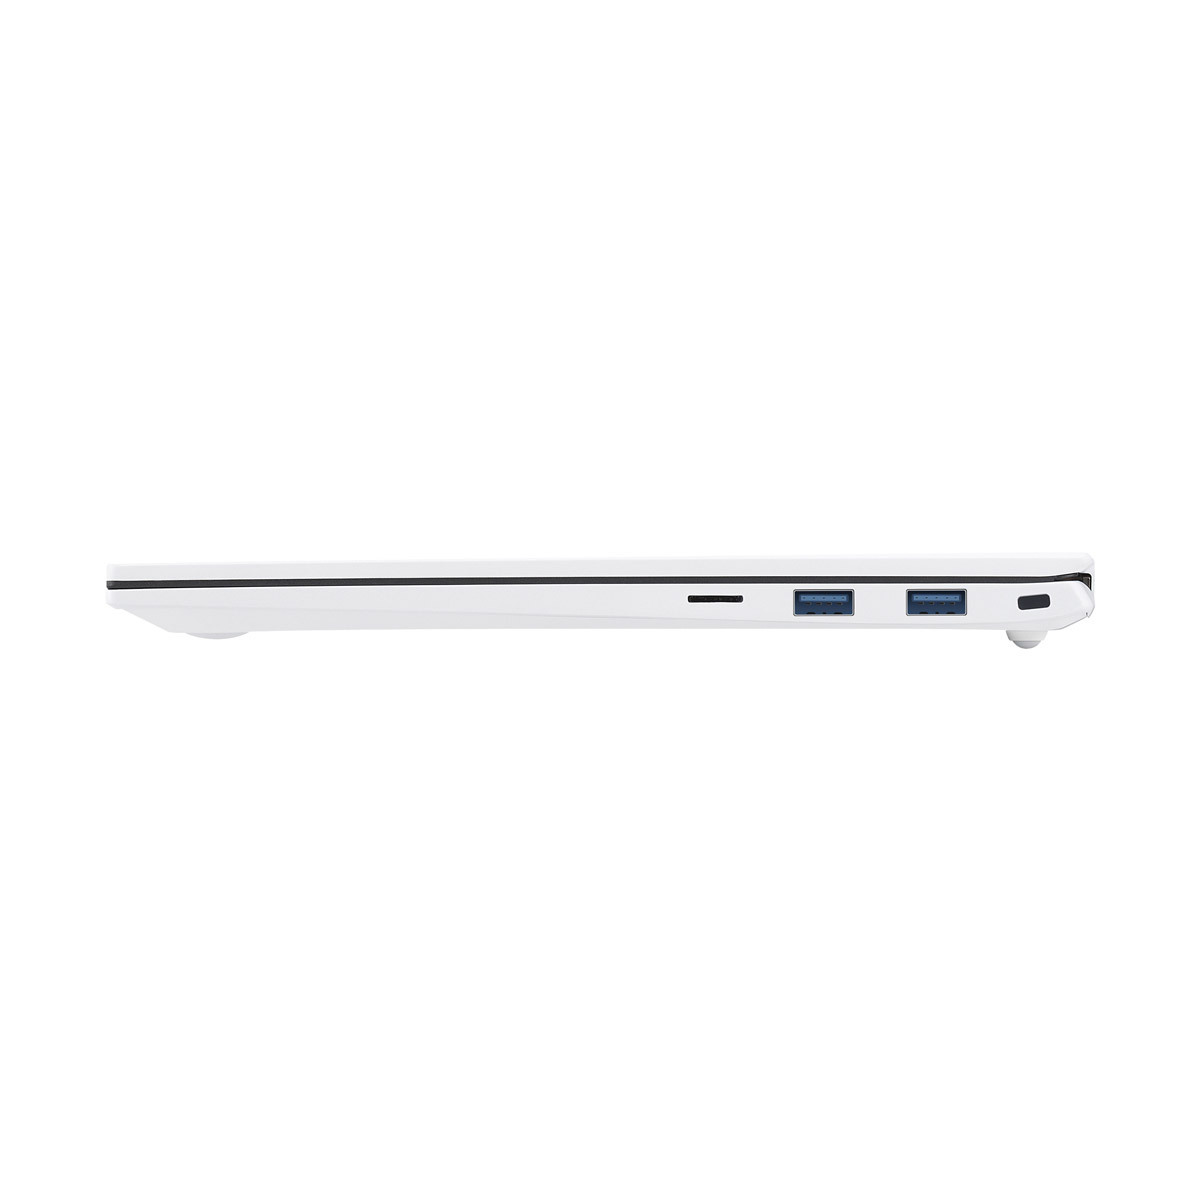 엘지 노트북 그램 35.6cm (14/i5/8GB/256GB) - 화이트